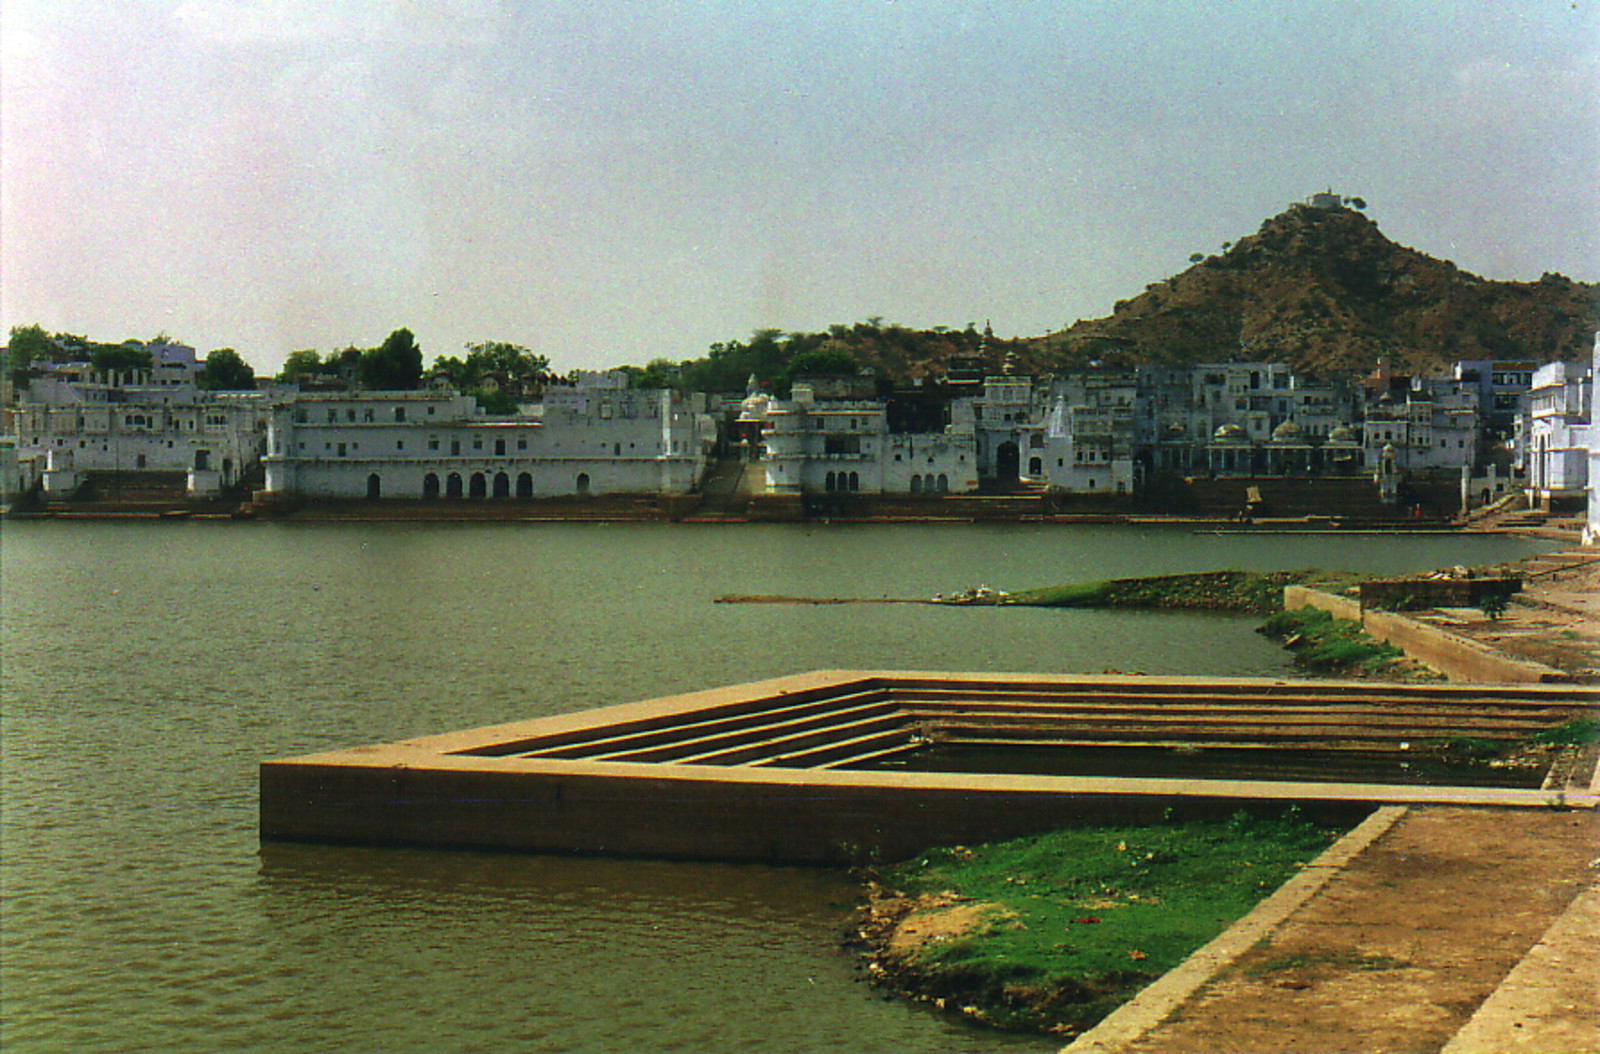 The lake at Pushkar